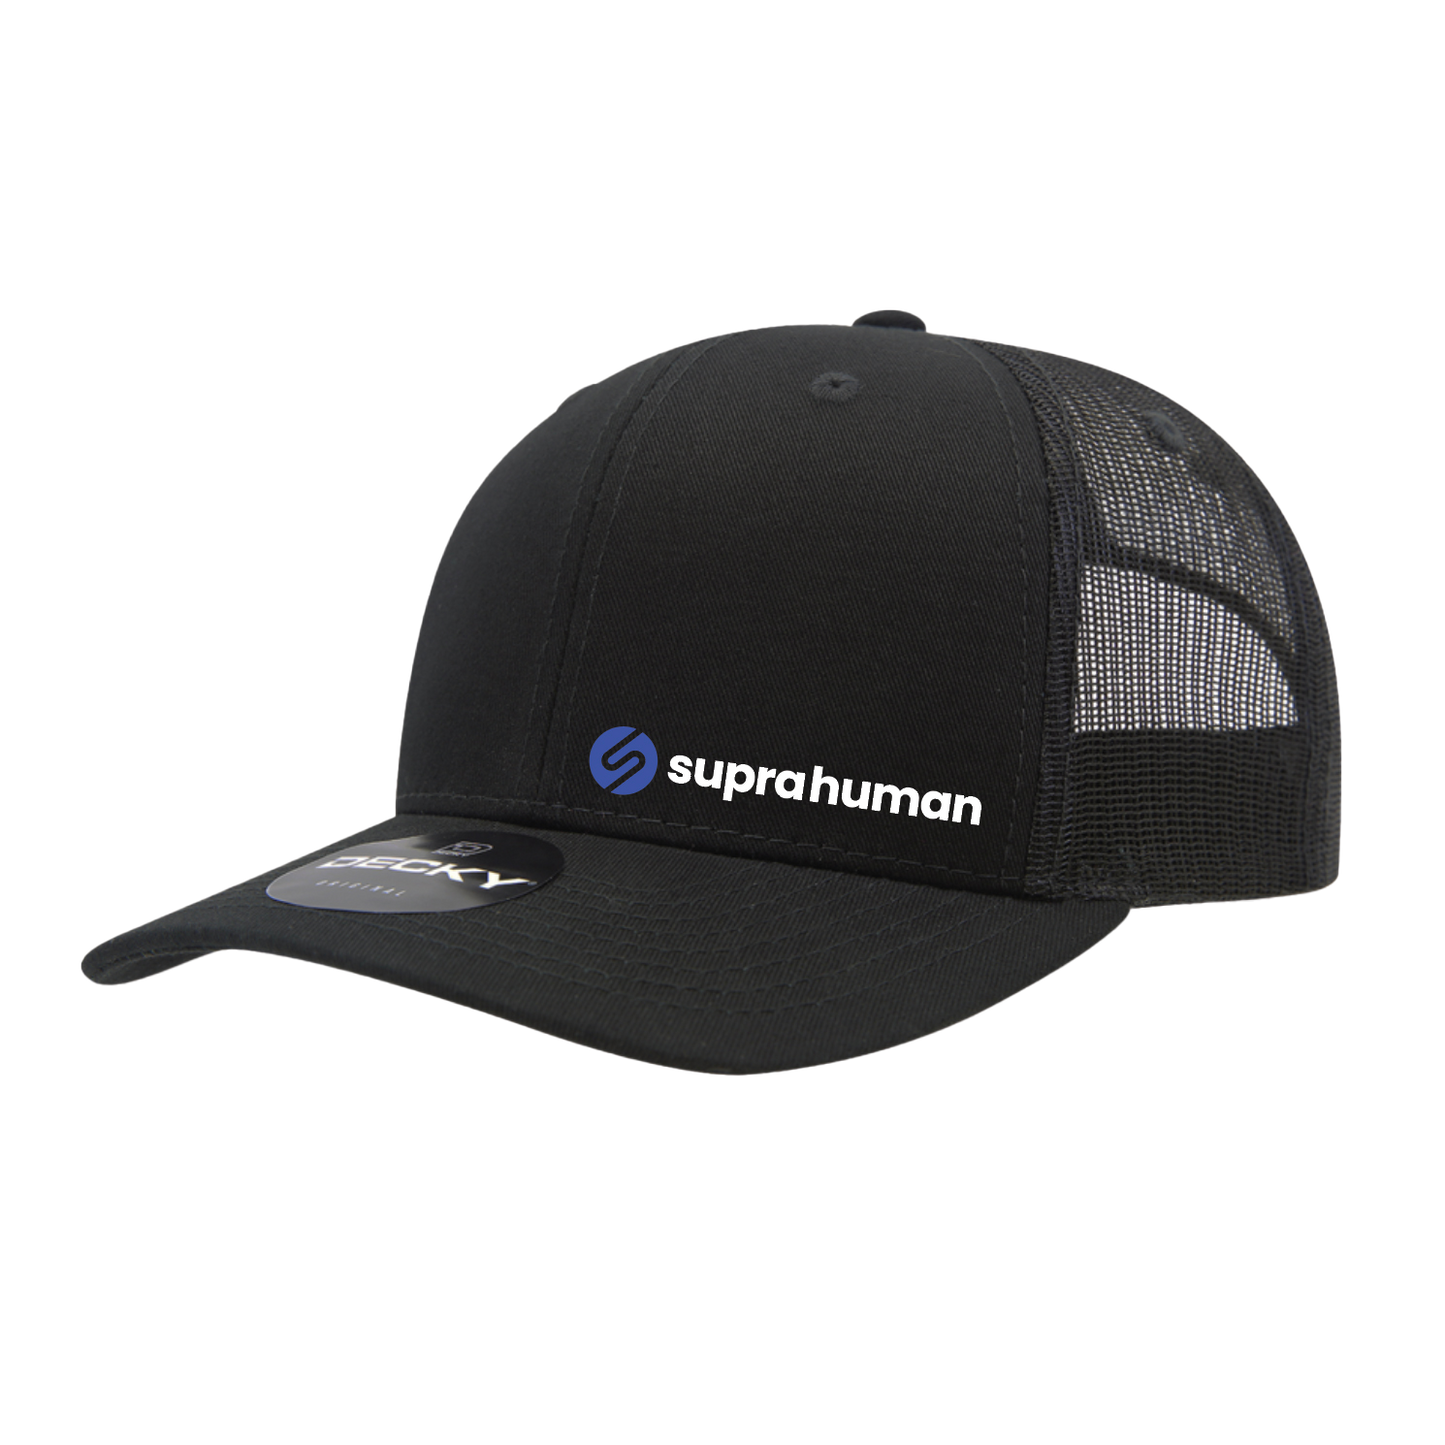 Supra Human Hat - Black